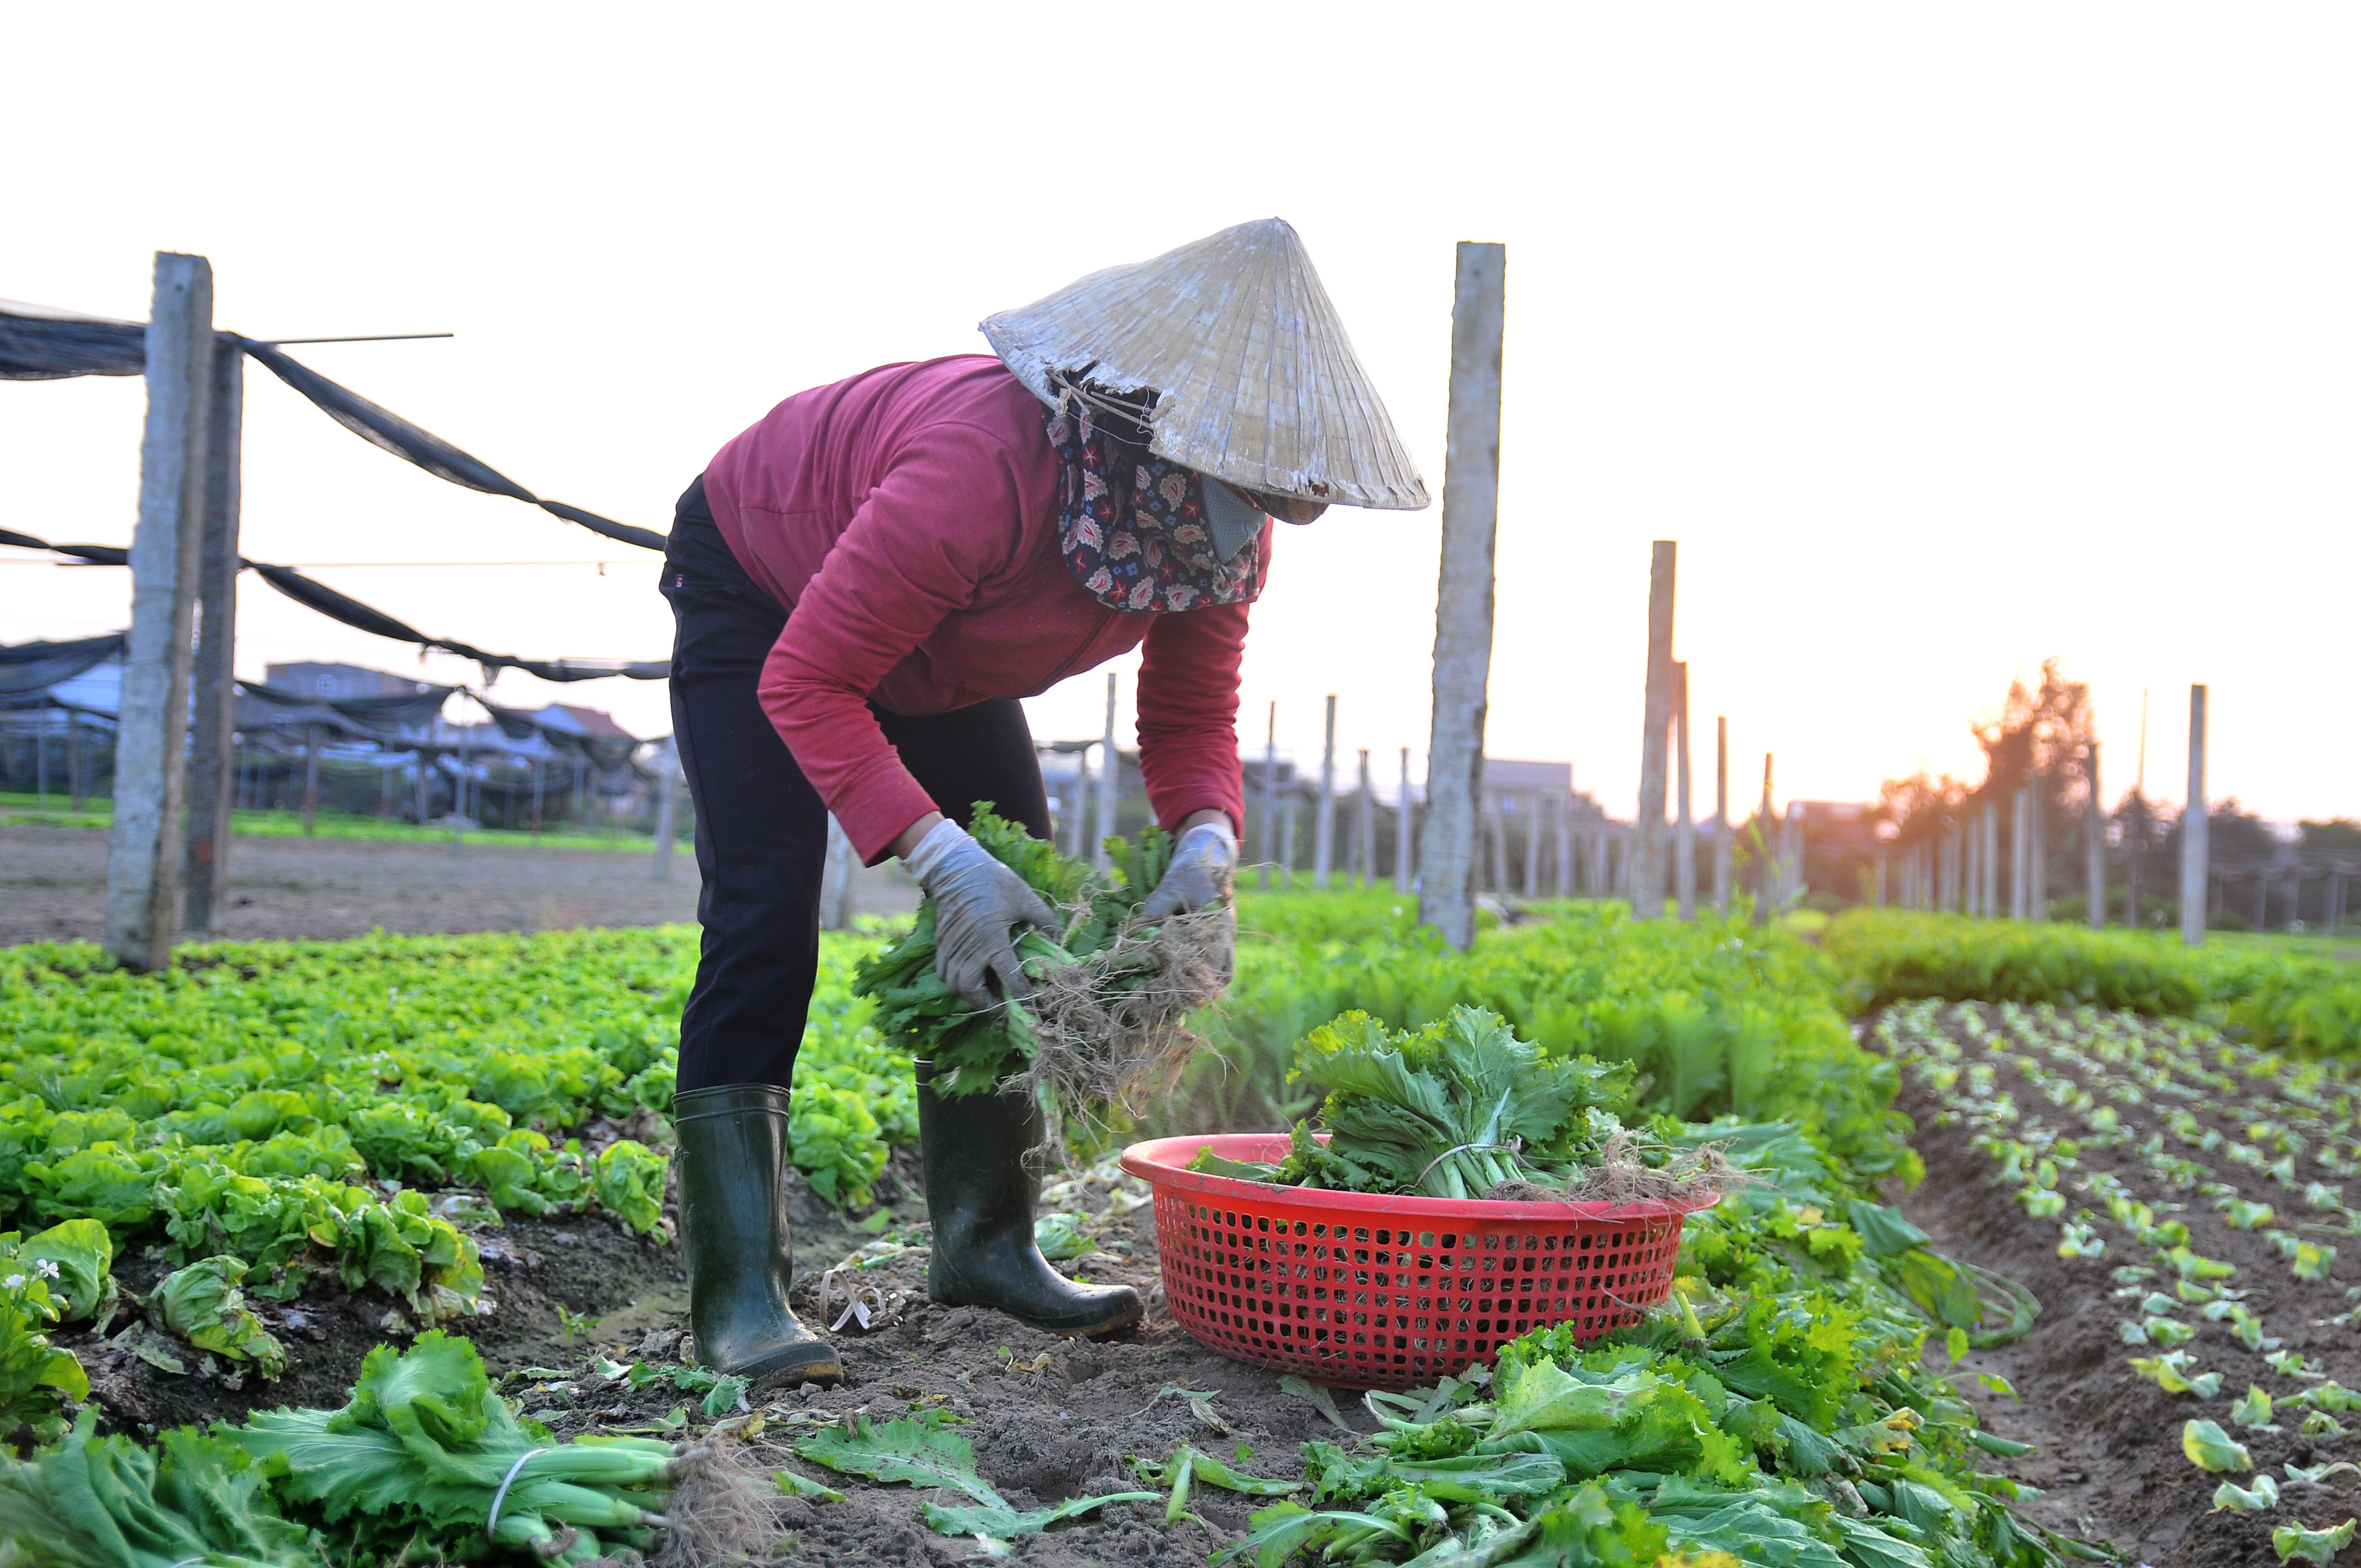 Hiện tại người dân đang cầm chừng bằng cách cố gắng vớt vát lứa rau cũ và trồng mới các loại rau mầm, xà lách ngắn ngày. Ảnh: TĐ